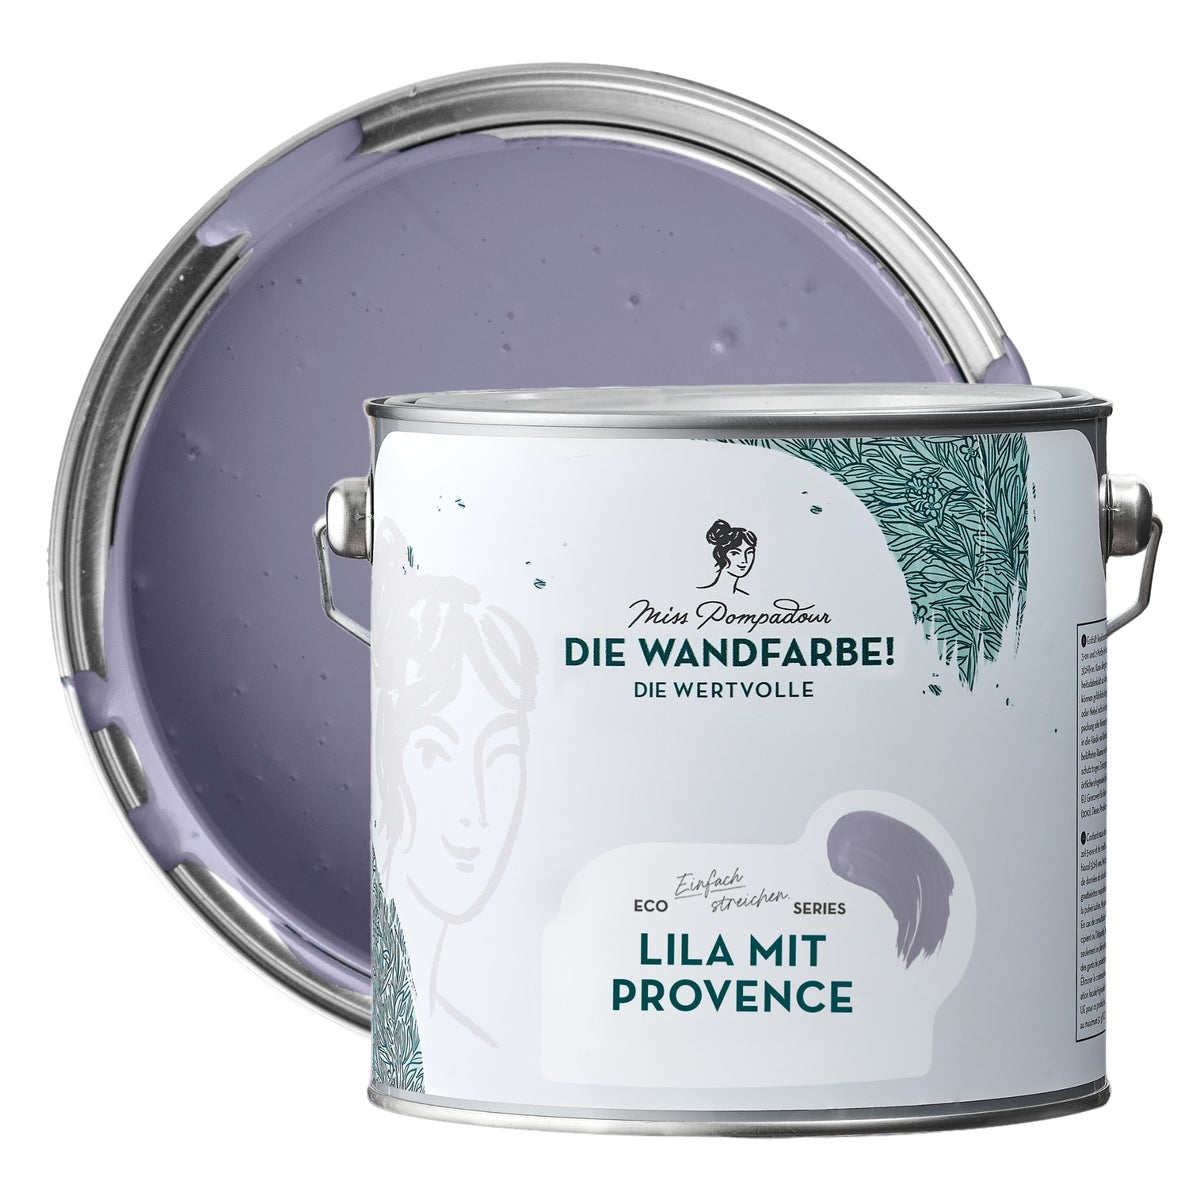 MissPompadour edelmatte Wandfarbe 2.5L Lila mit Provence - sehr hohe Deckkraft - geruchsneutrale, spritzfreie Farbe - atmungsaktive, wasserbasierte Innenfarbe/Deckenfarbe - Die Wertvolle